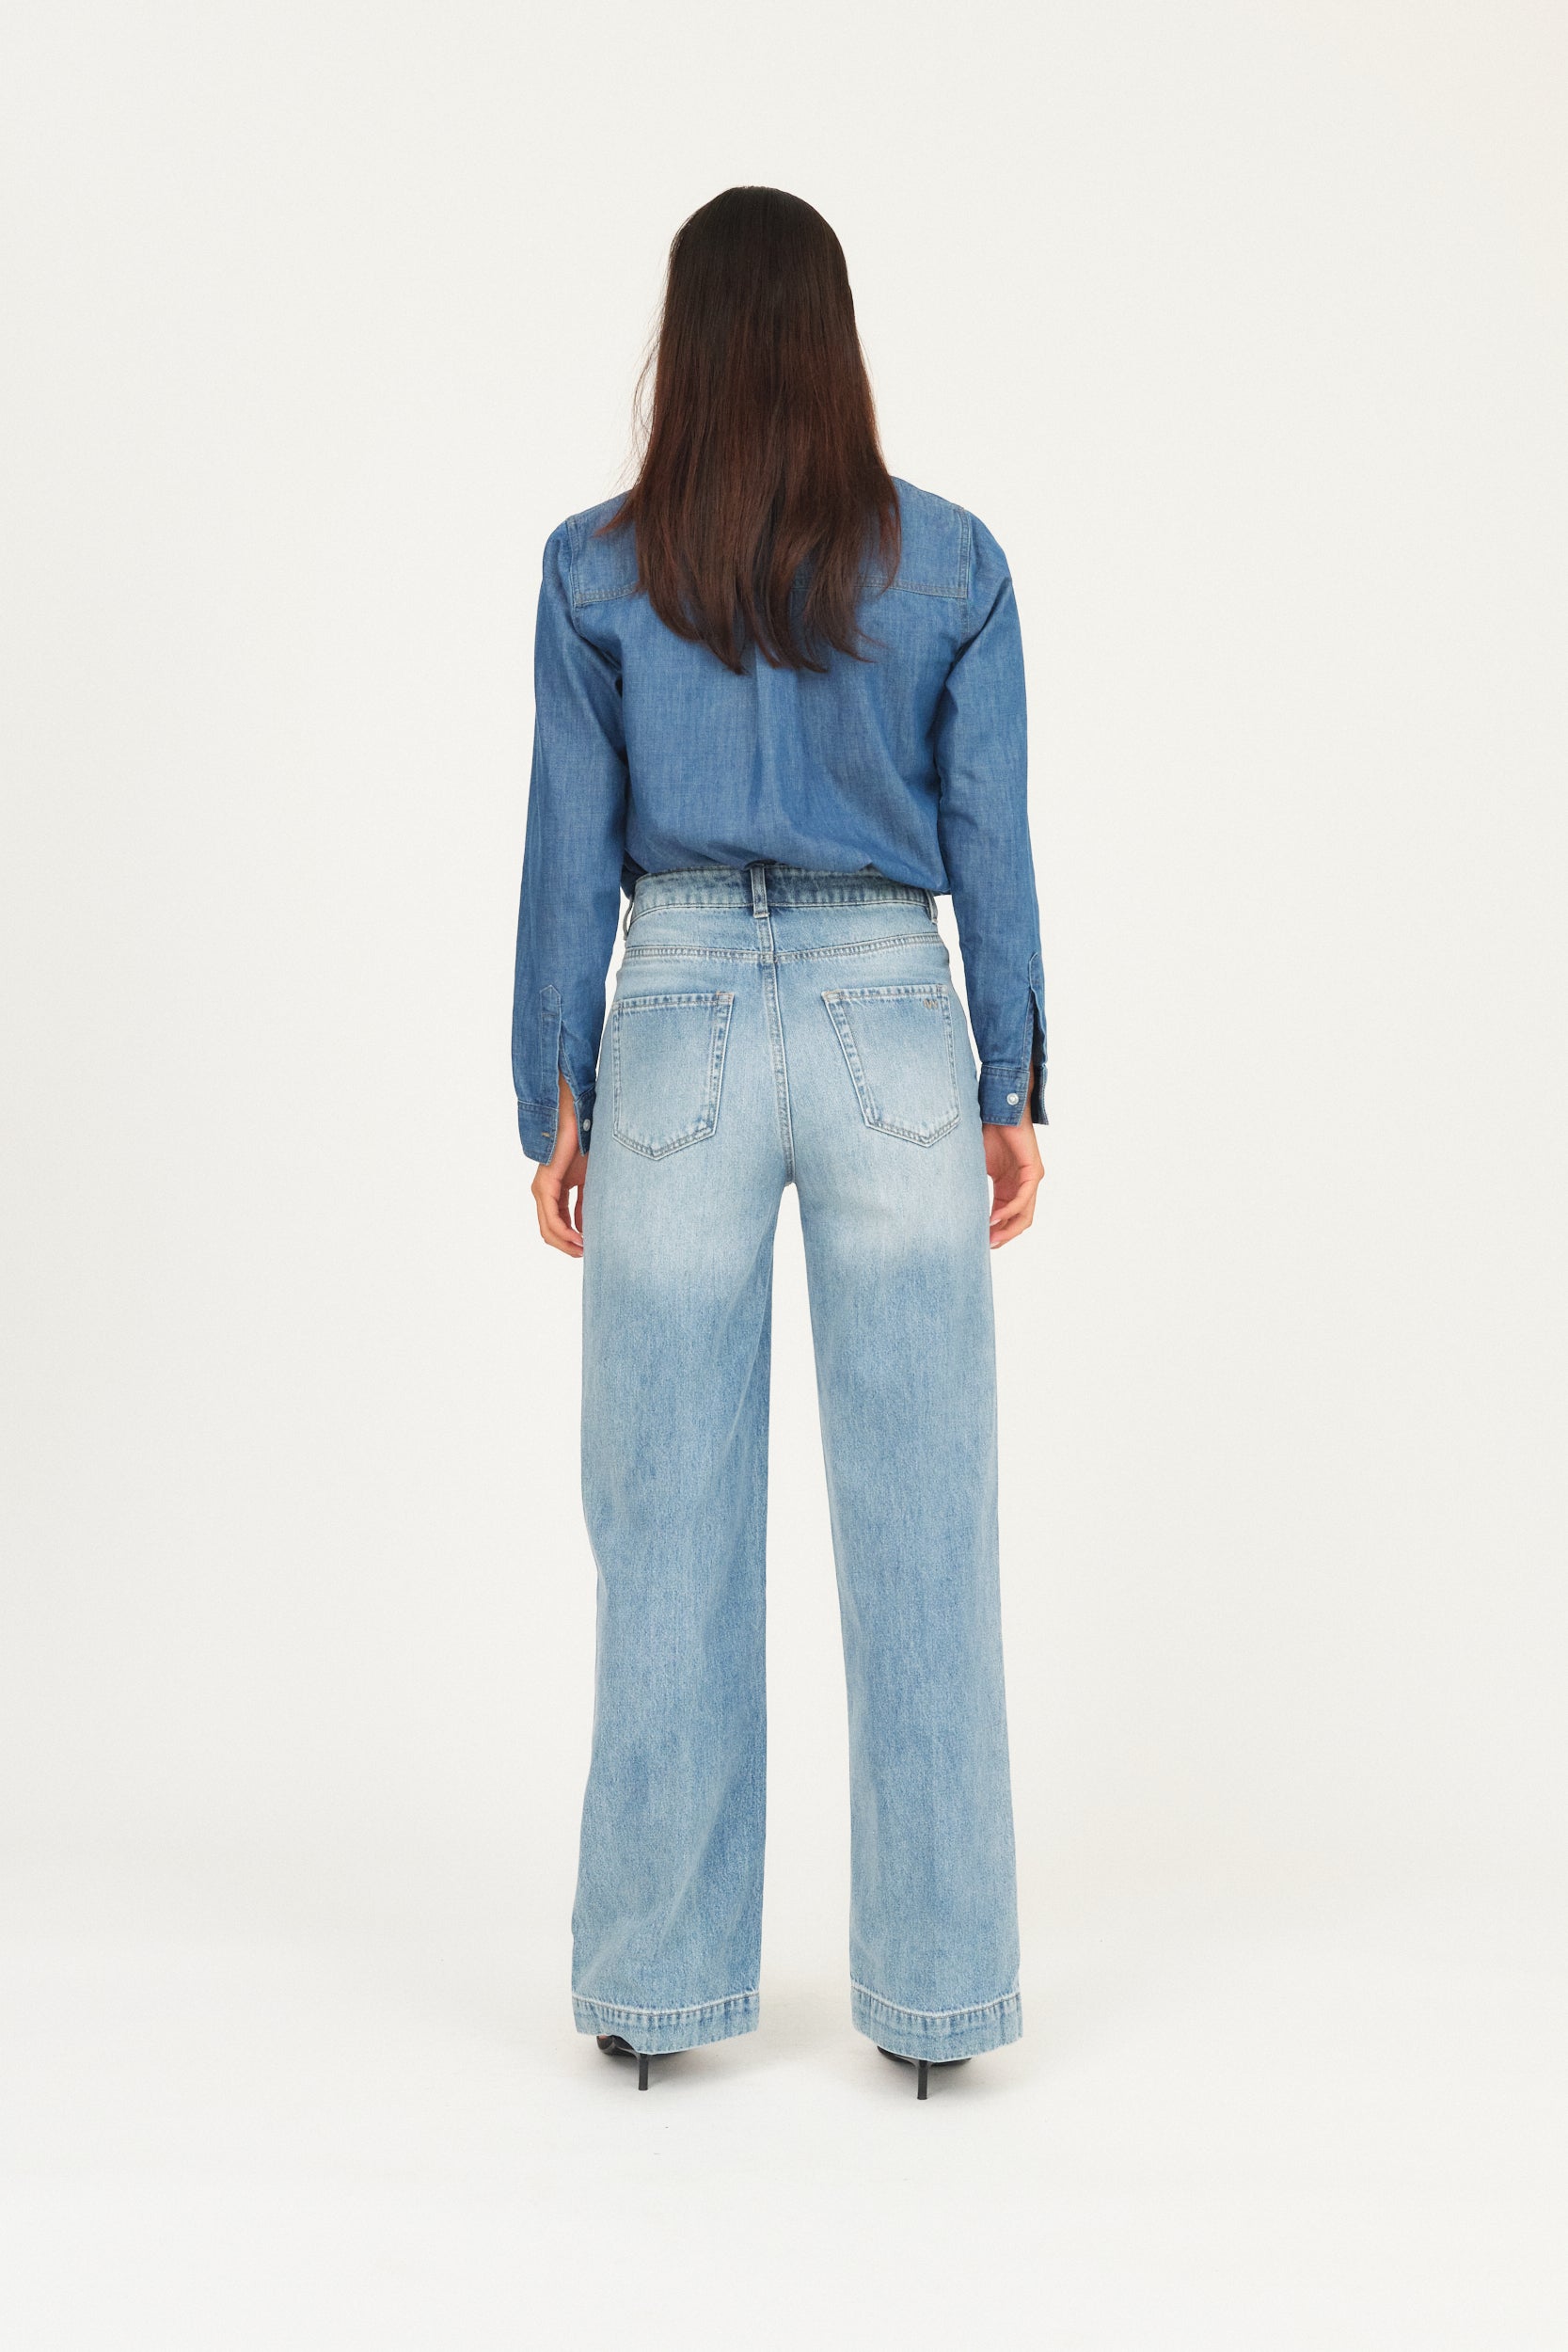 IVY Copenhagen IVY-Augusta Jeans Wash Palencia Jeans & Pants 51 Denim Blue